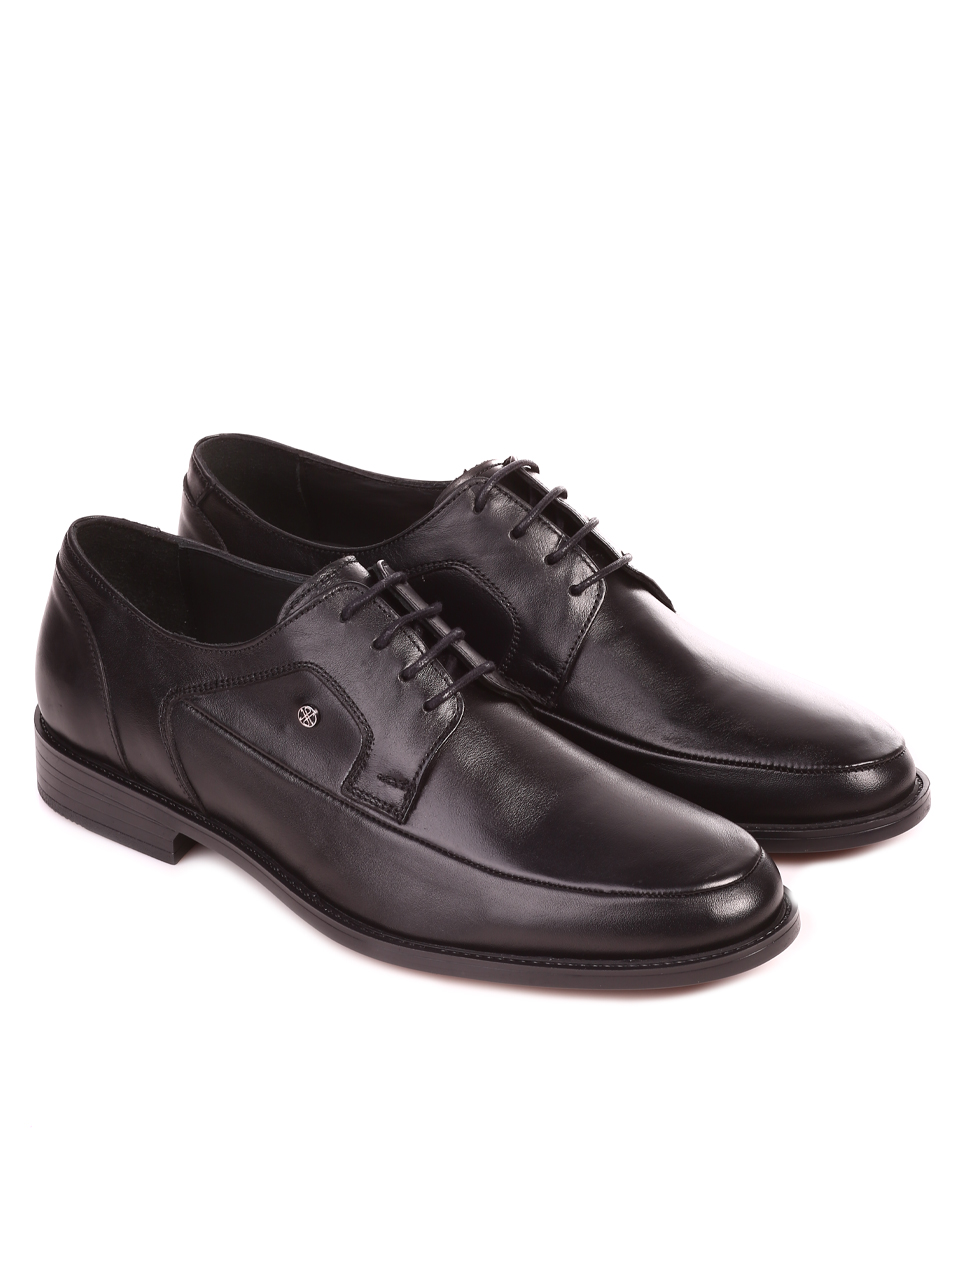 Елегантни мъжки обувки от естествена кожа 153-5833 black